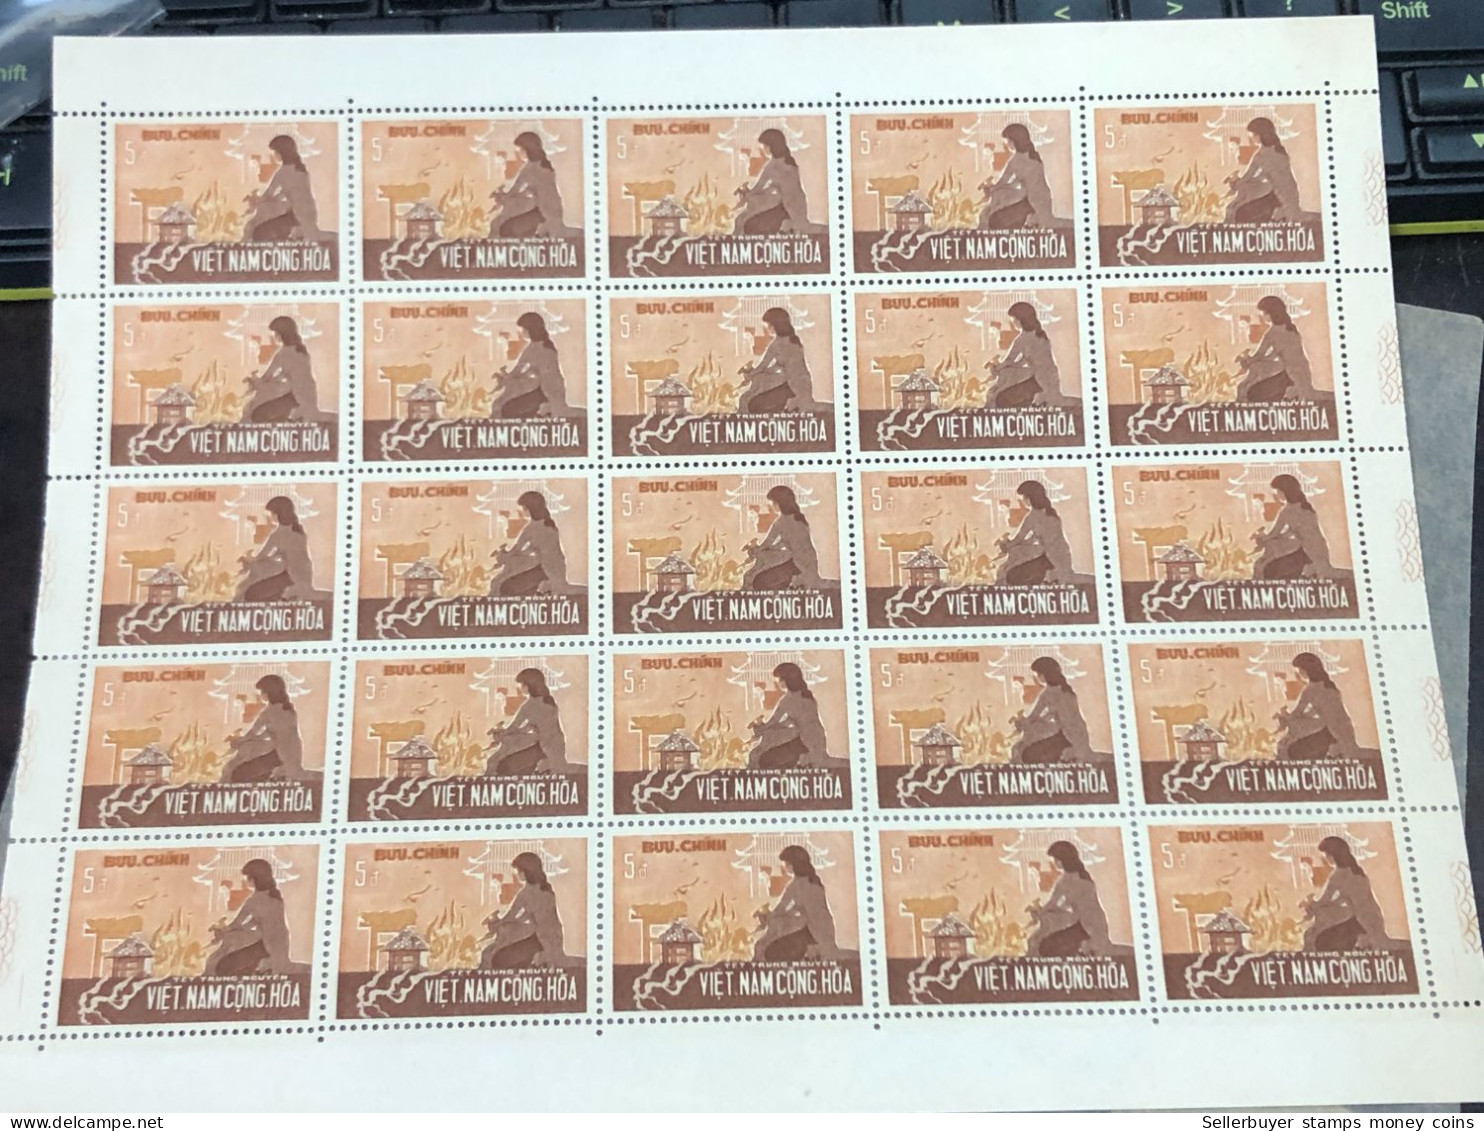 Vietnam South Sheet Stamps Before 1975(3$ Fete Des Ames Errant 1966) 1 Pcs 25 Stamps Quality Good - Vietnam